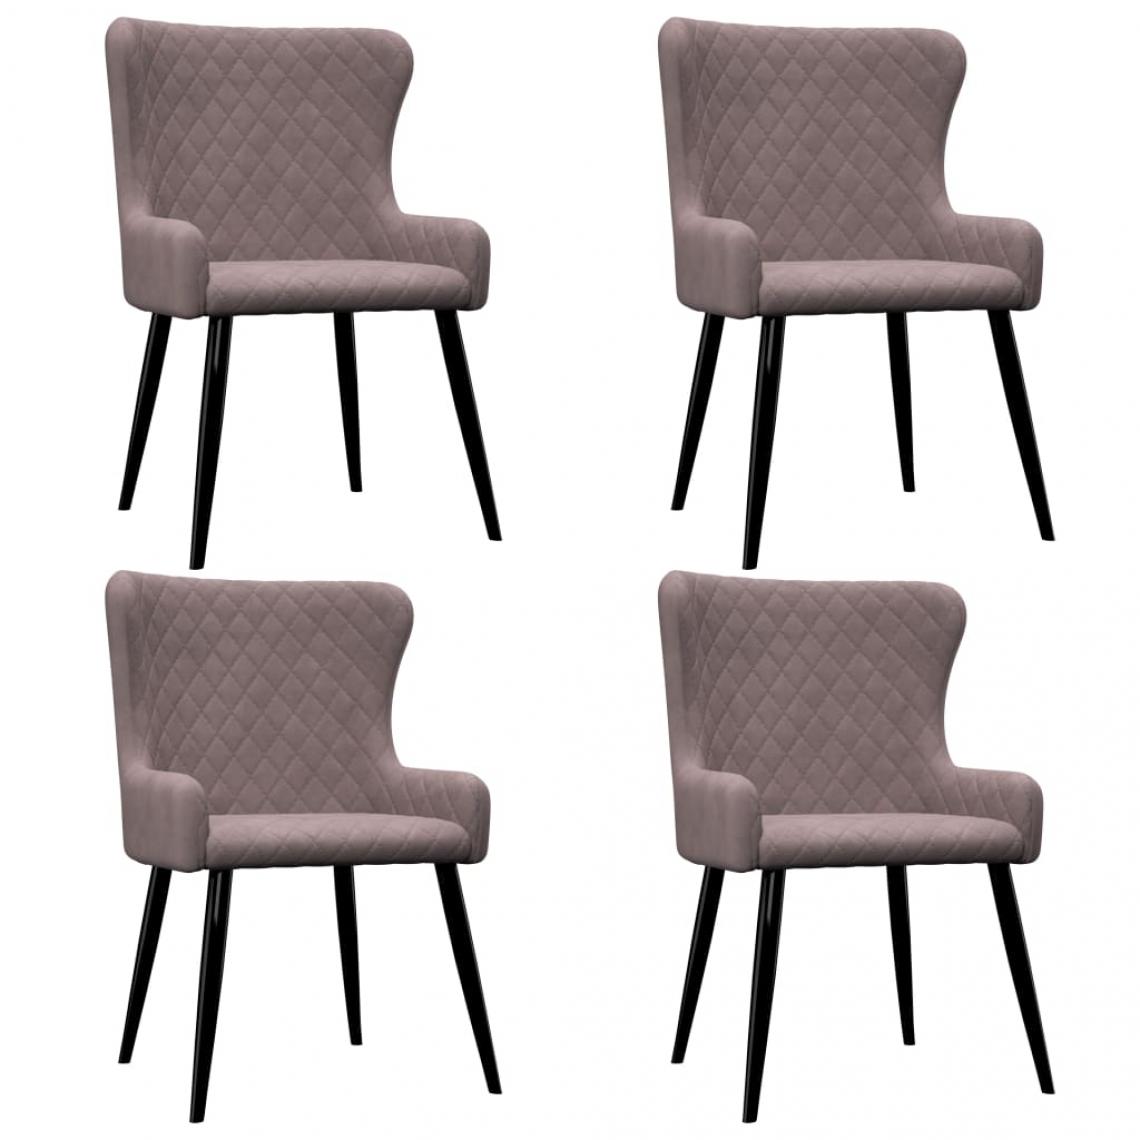 Decoshop26 - Lot de 4 chaises de salle à manger cuisine style moderne et chic en velours rose CDS021915 - Chaises